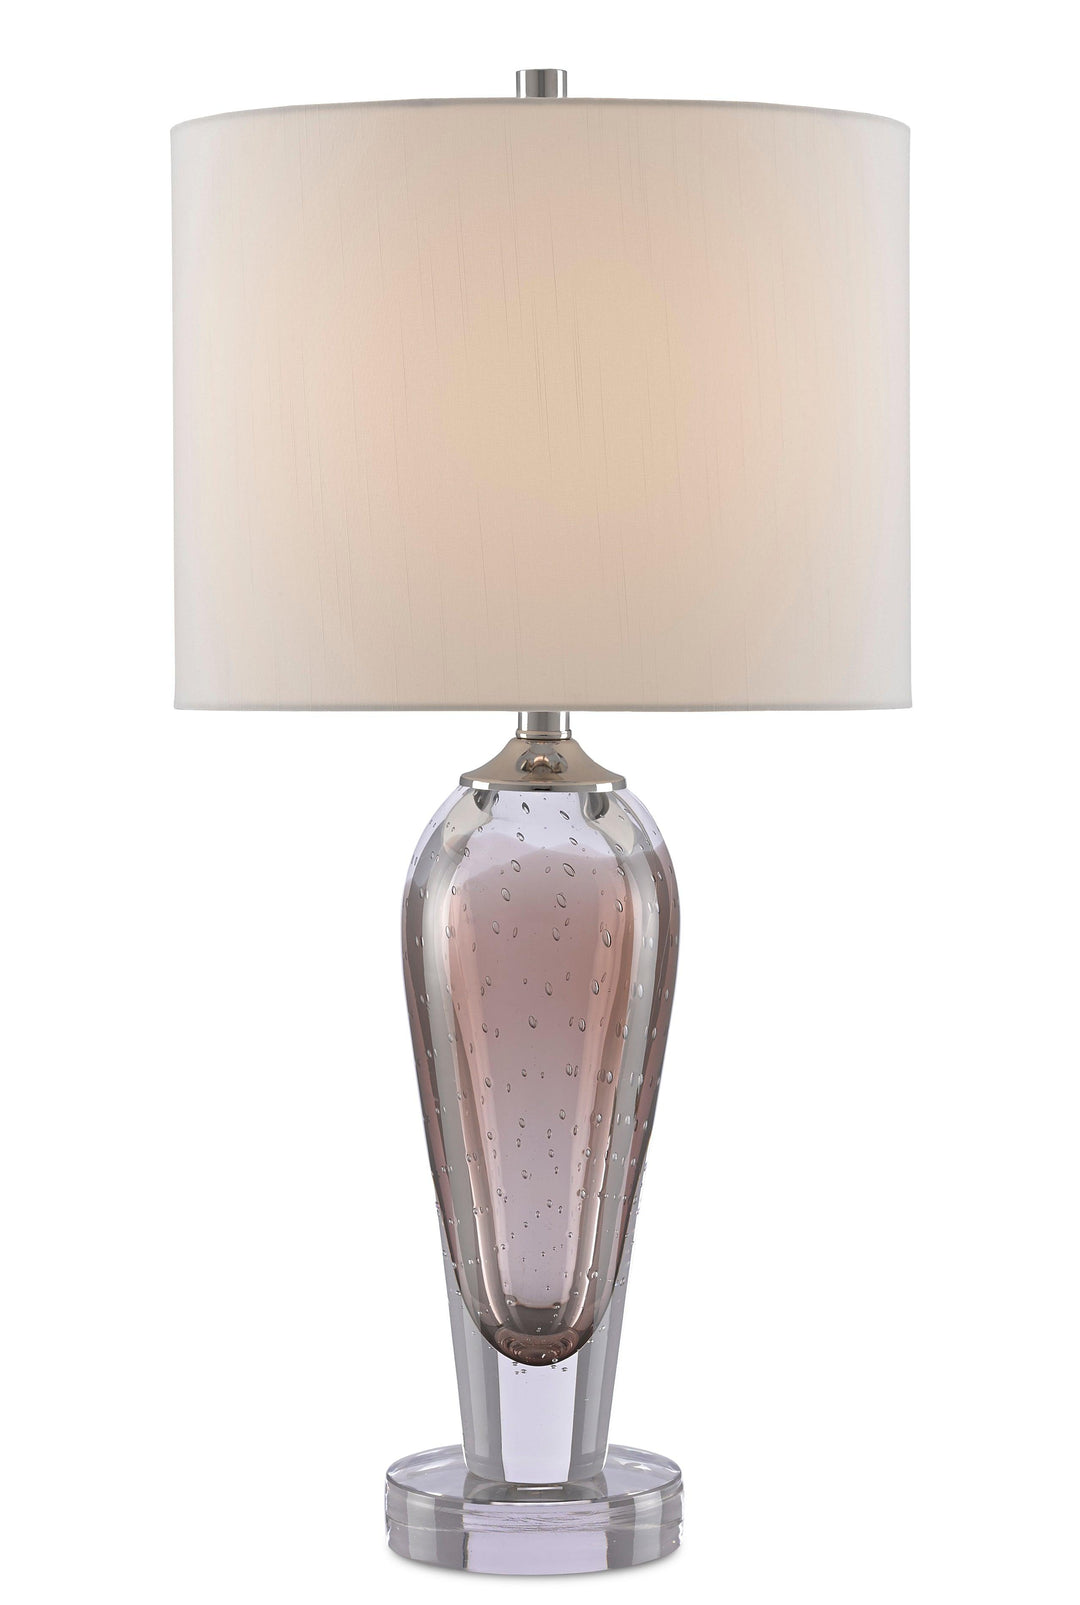 Haydon Table Lamp - Casey & Company